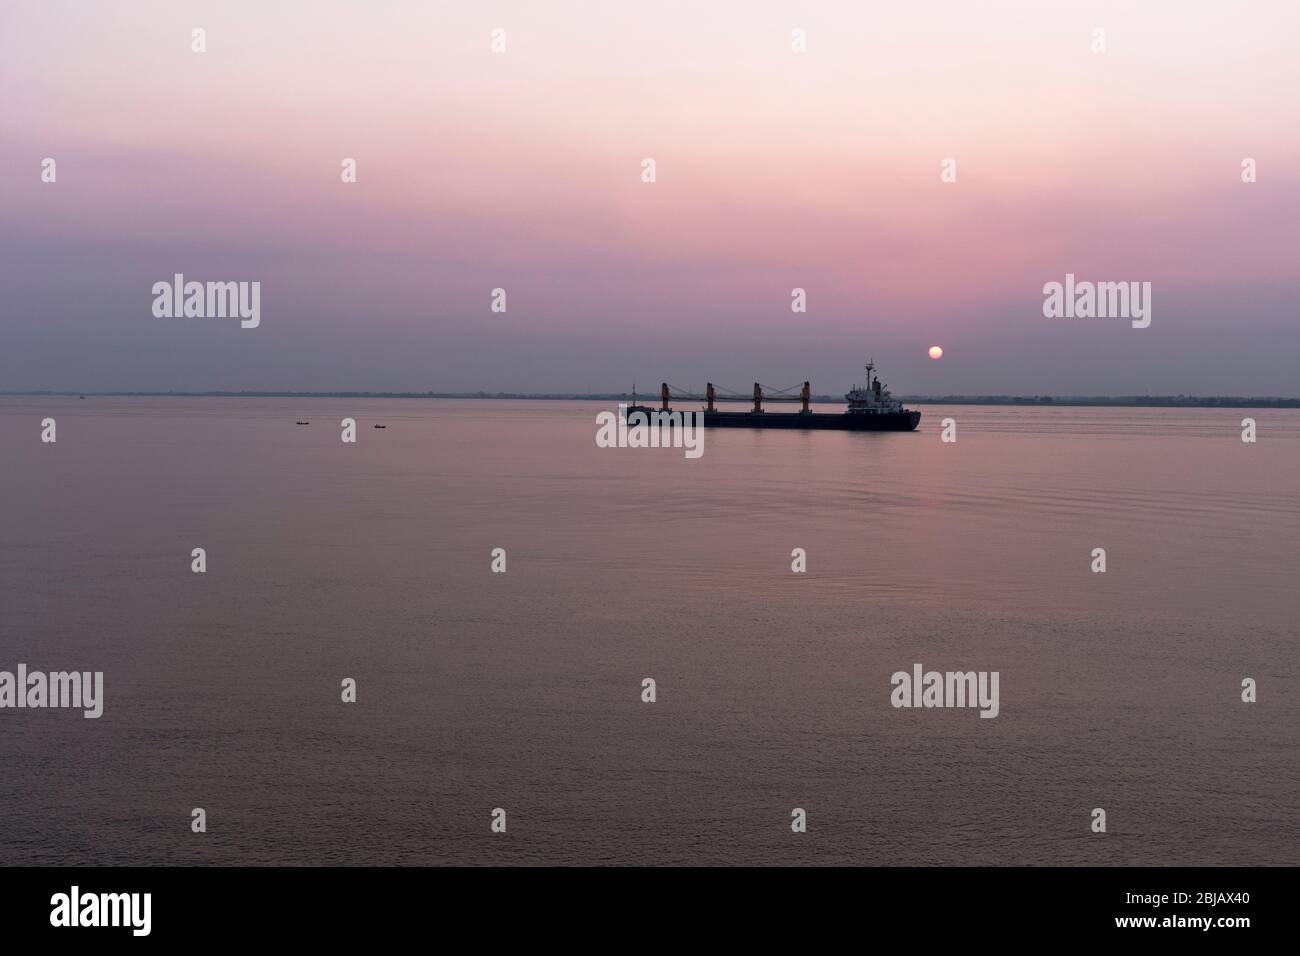 dh extrême est Asie YANGON RIVER MYANMAR coucher de soleil sur le cargo de la marine marchande navire de navigation asiatique extrême est Banque D'Images